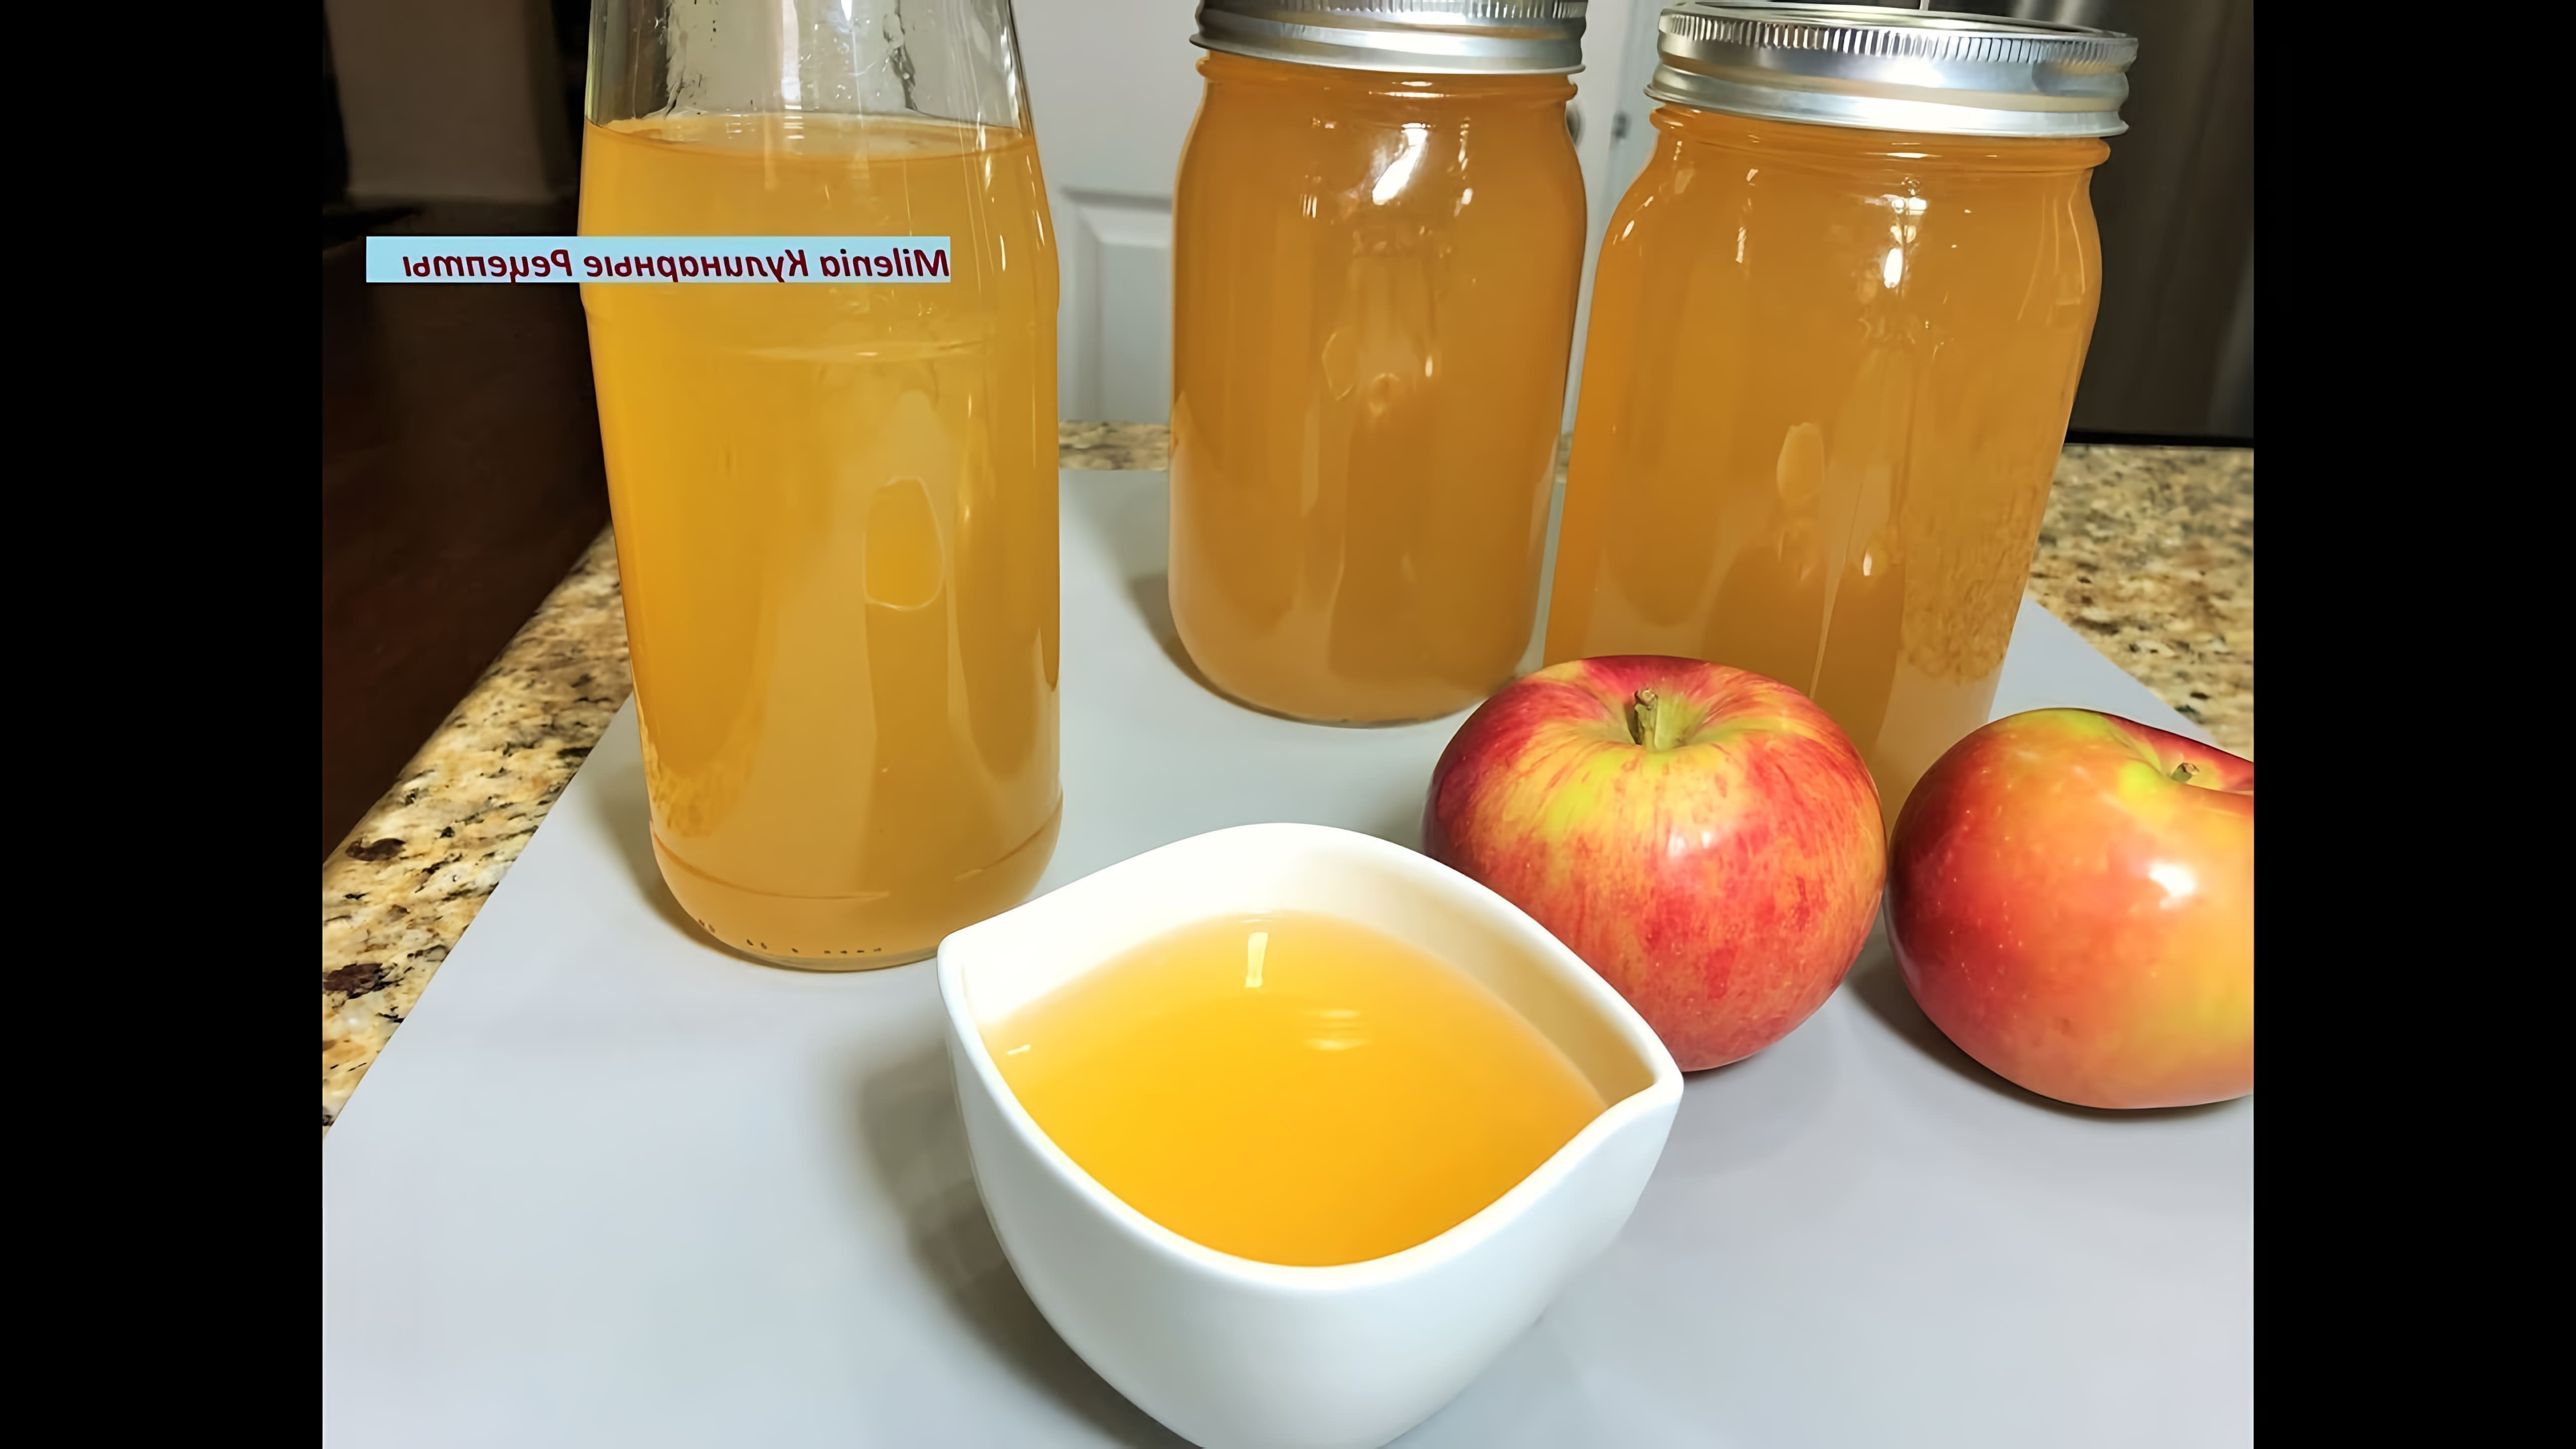 В этом видео демонстрируется процесс приготовления яблочного уксуса в домашних условиях